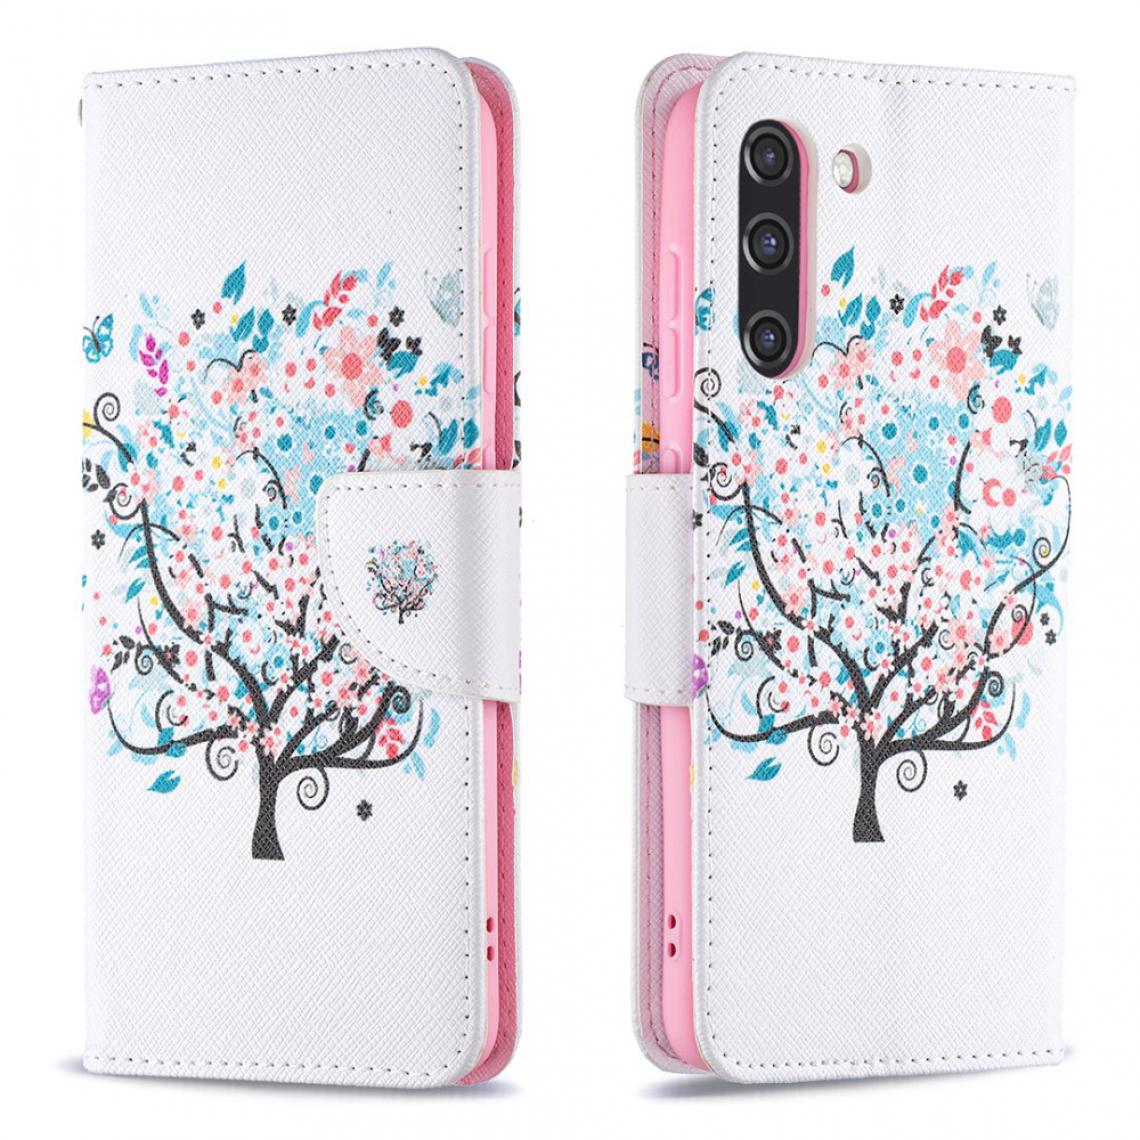 Other - Etui en PU Style chaud magnétique avec impression de motifs arbre fleur pour votre Samsung Galaxy S21 FE/S21 Lite - Coque, étui smartphone